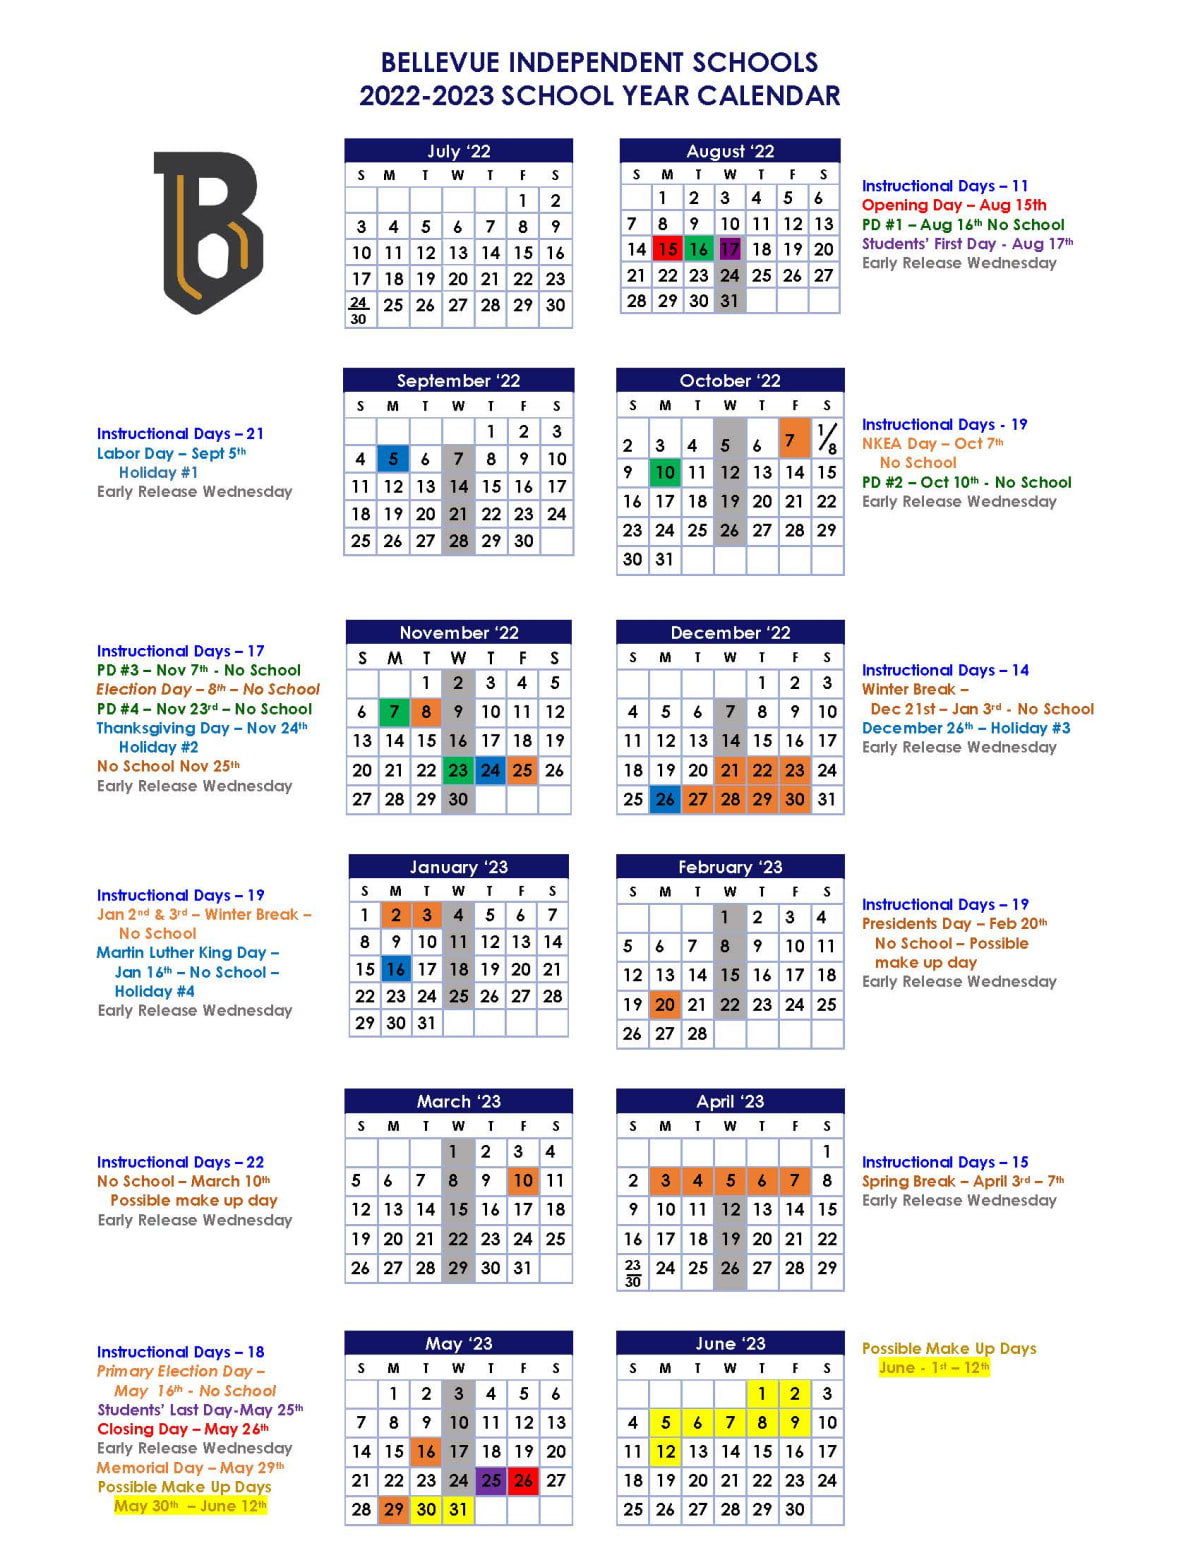 Bellevue Independent Schools Calendar